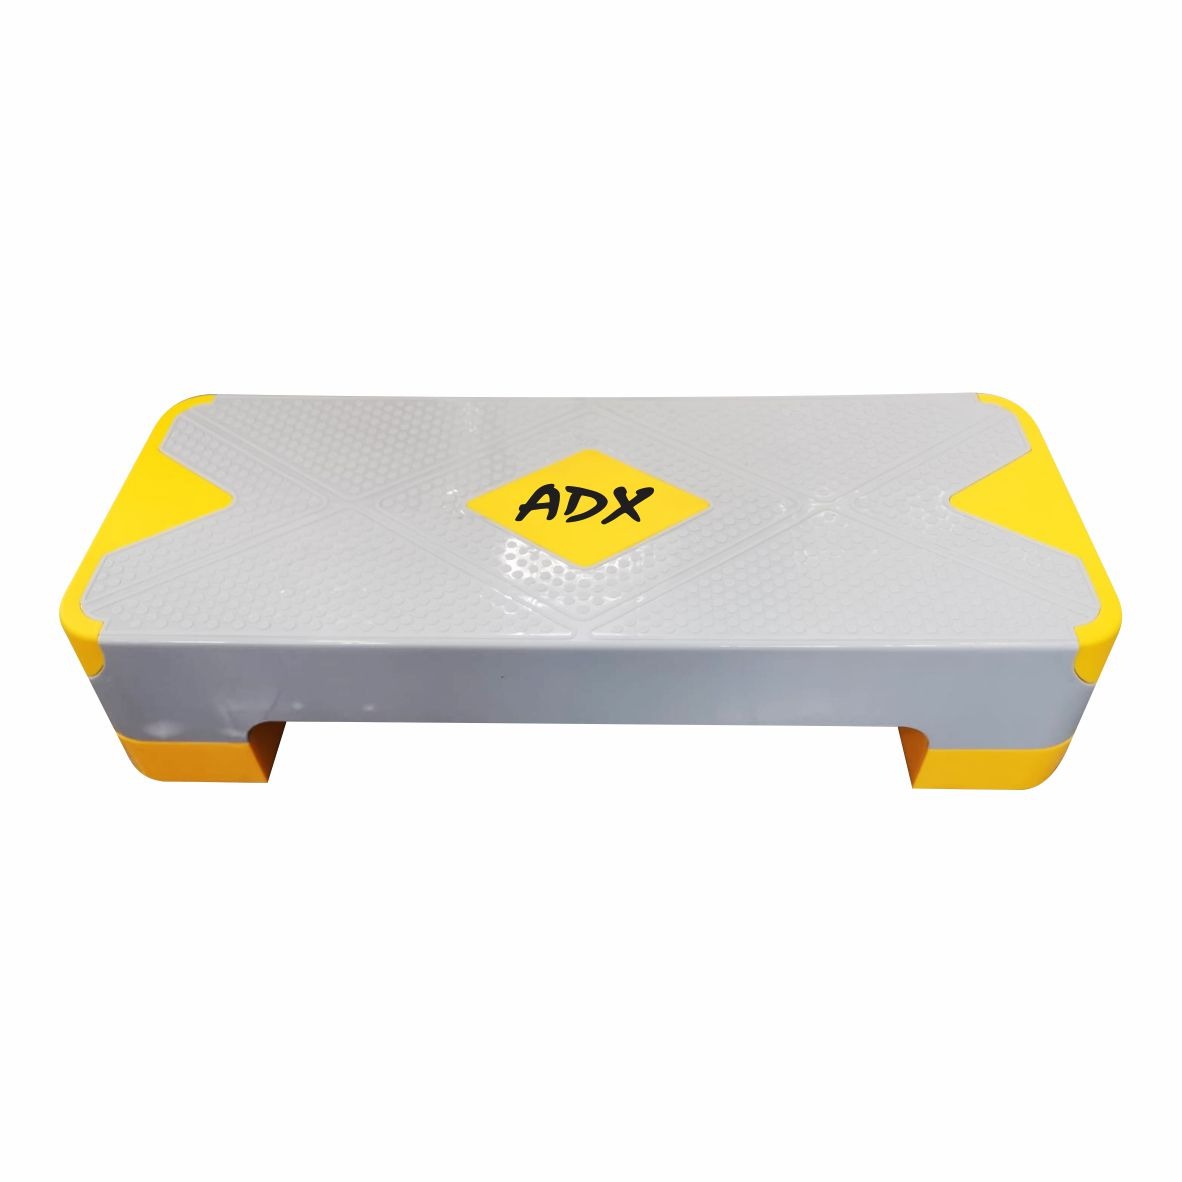 Banco Step adx solido abs 68×28 2 niveles altura 10 y 15 cm – ADX